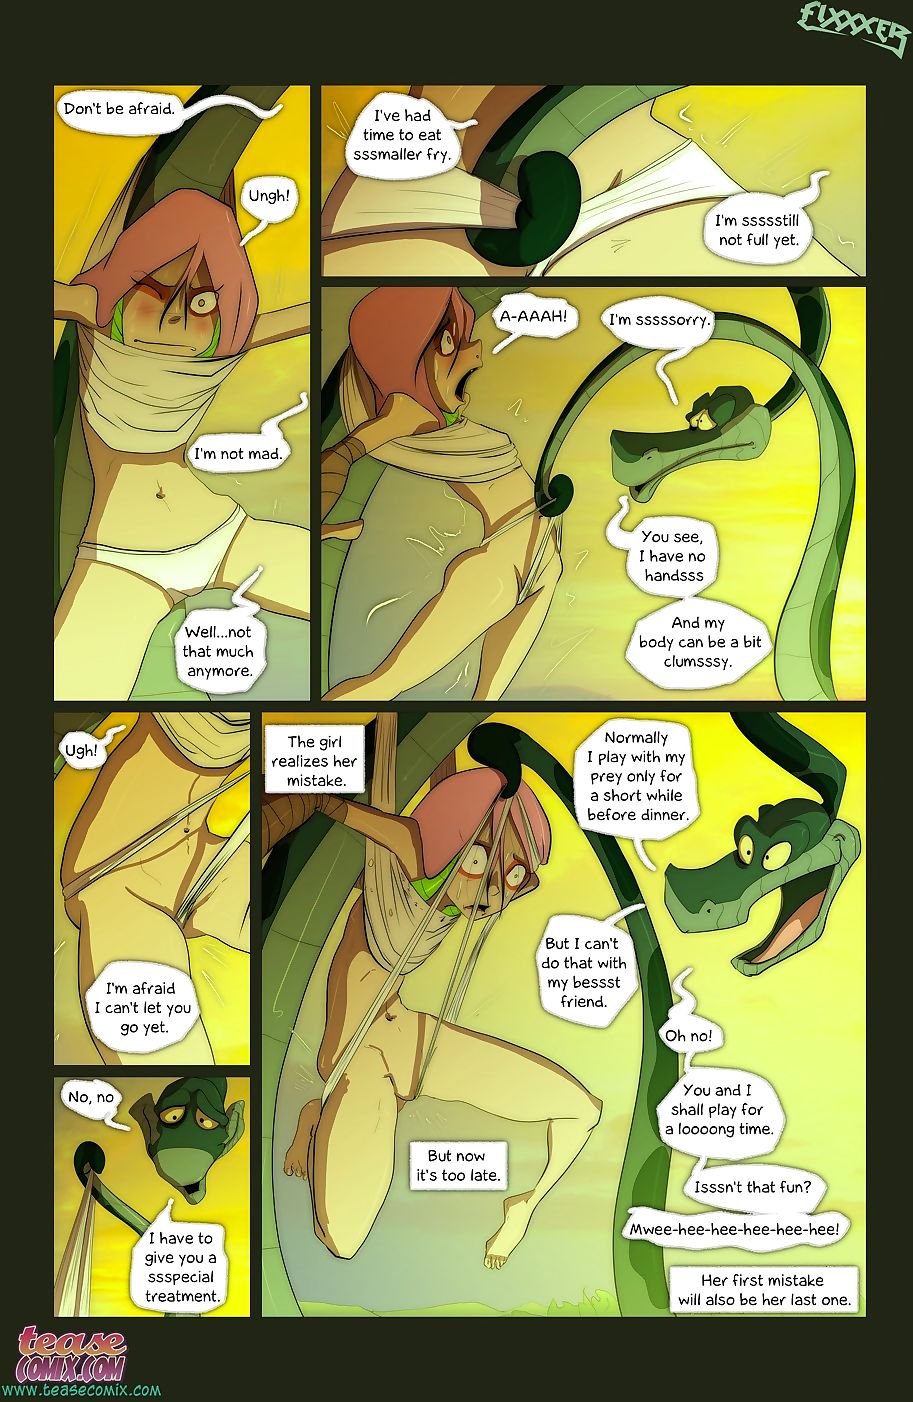 der Schlange und Mädchen 2 teasecomix page 1